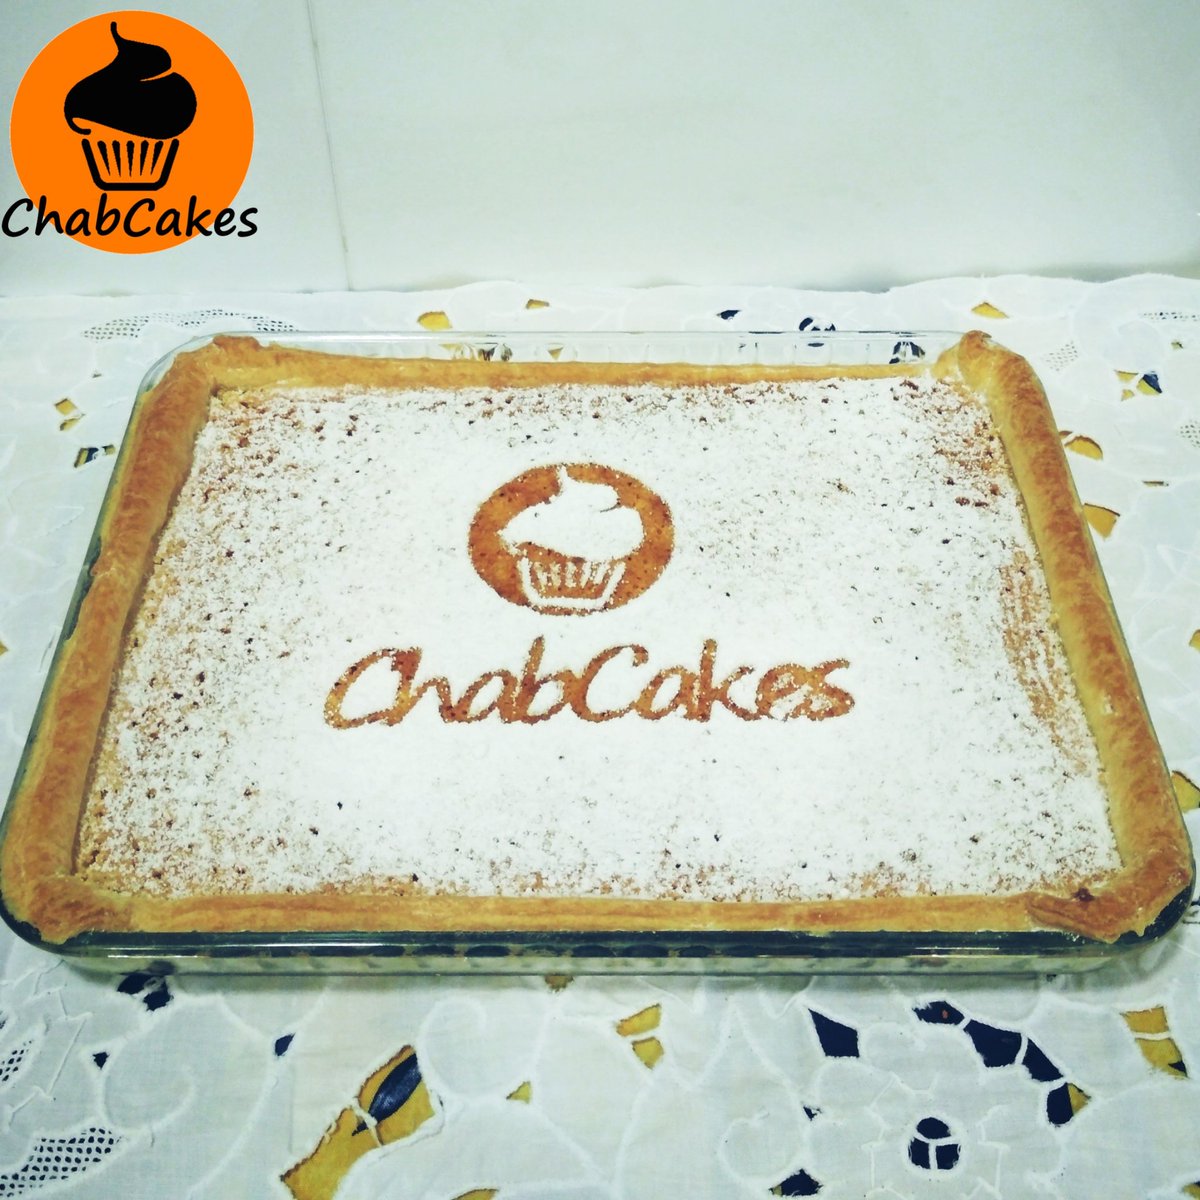 Terminamos la semana con esta deliciosa tarta de almendra estilo Santiago. Buenísima para merendar con algo caliente en estos días de lluvia y frío 
#chabcakes #dulce #Asturias #carreño #gozón #tartadealmendra #tartasantiago #almendras #casero #hechoamano #repostería #detalles